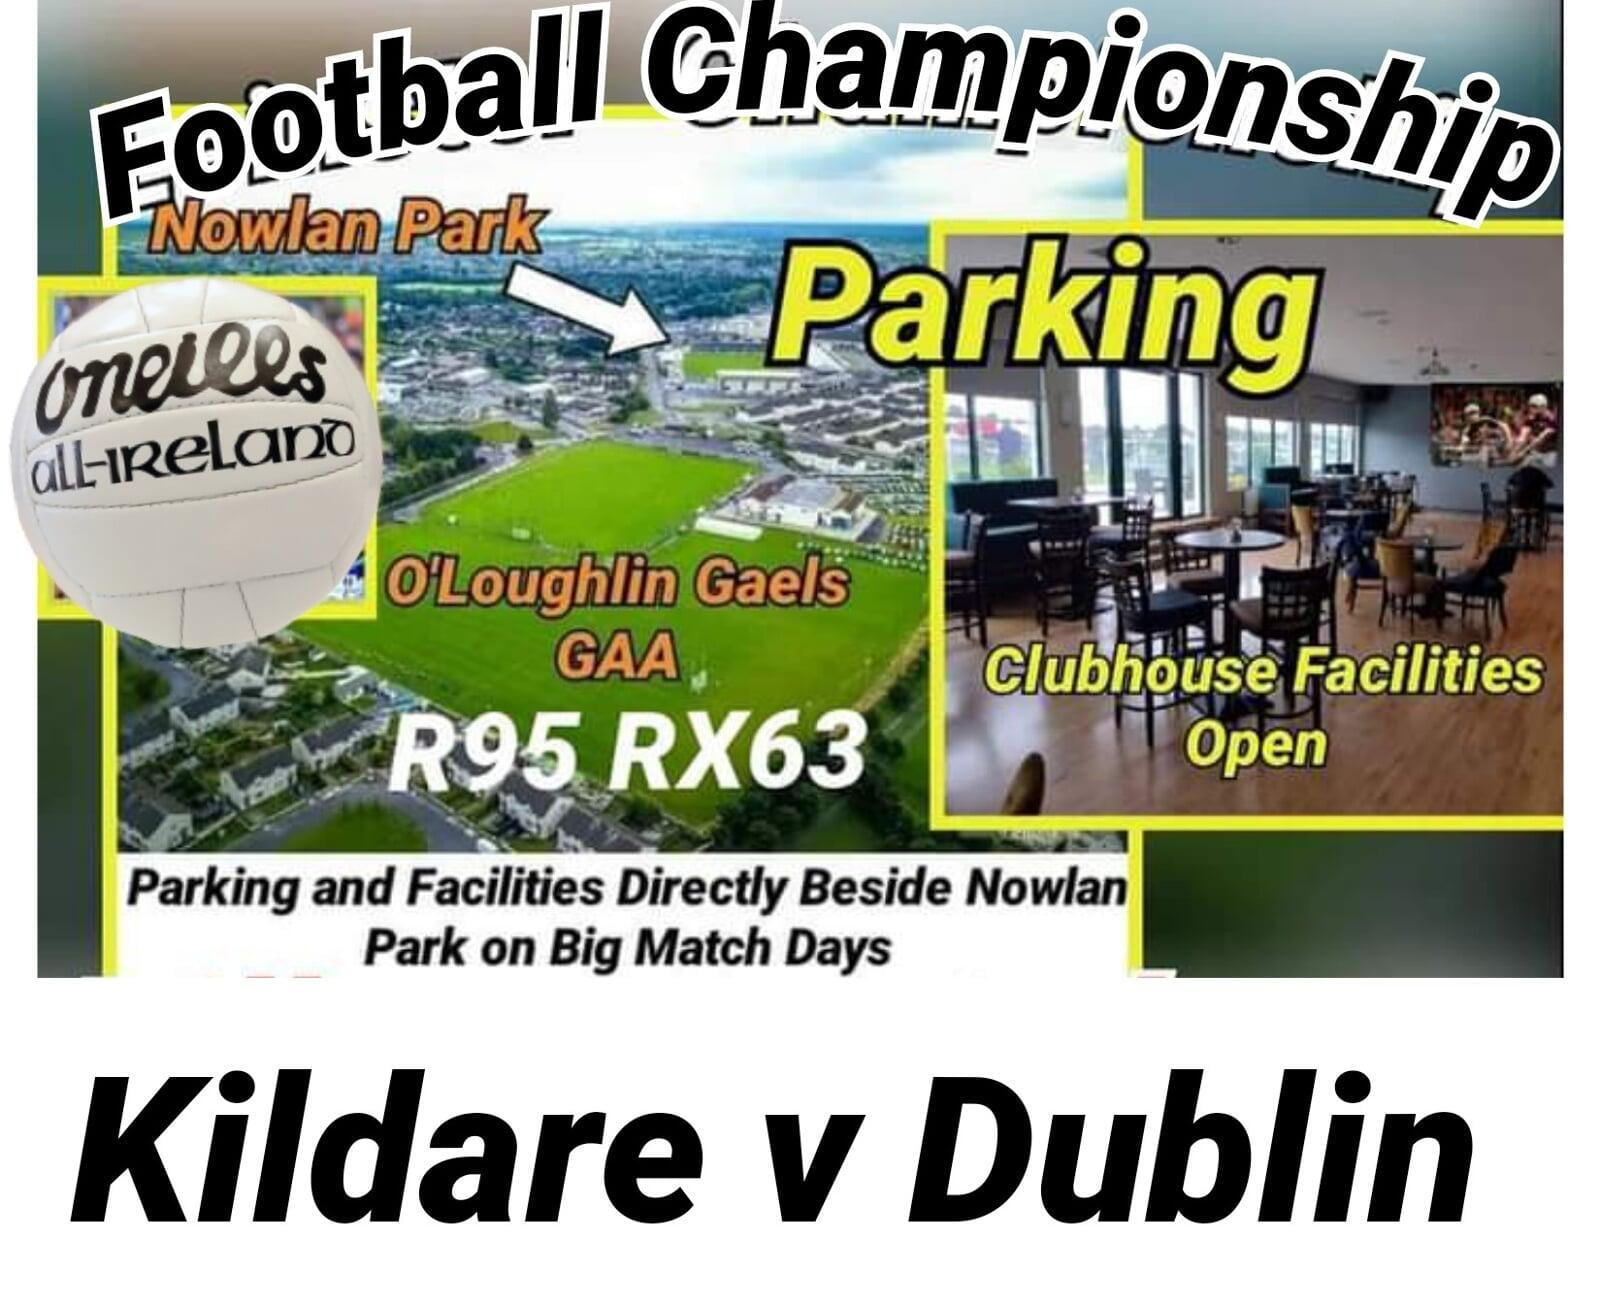 Dublin v Kildare - Ticket Information